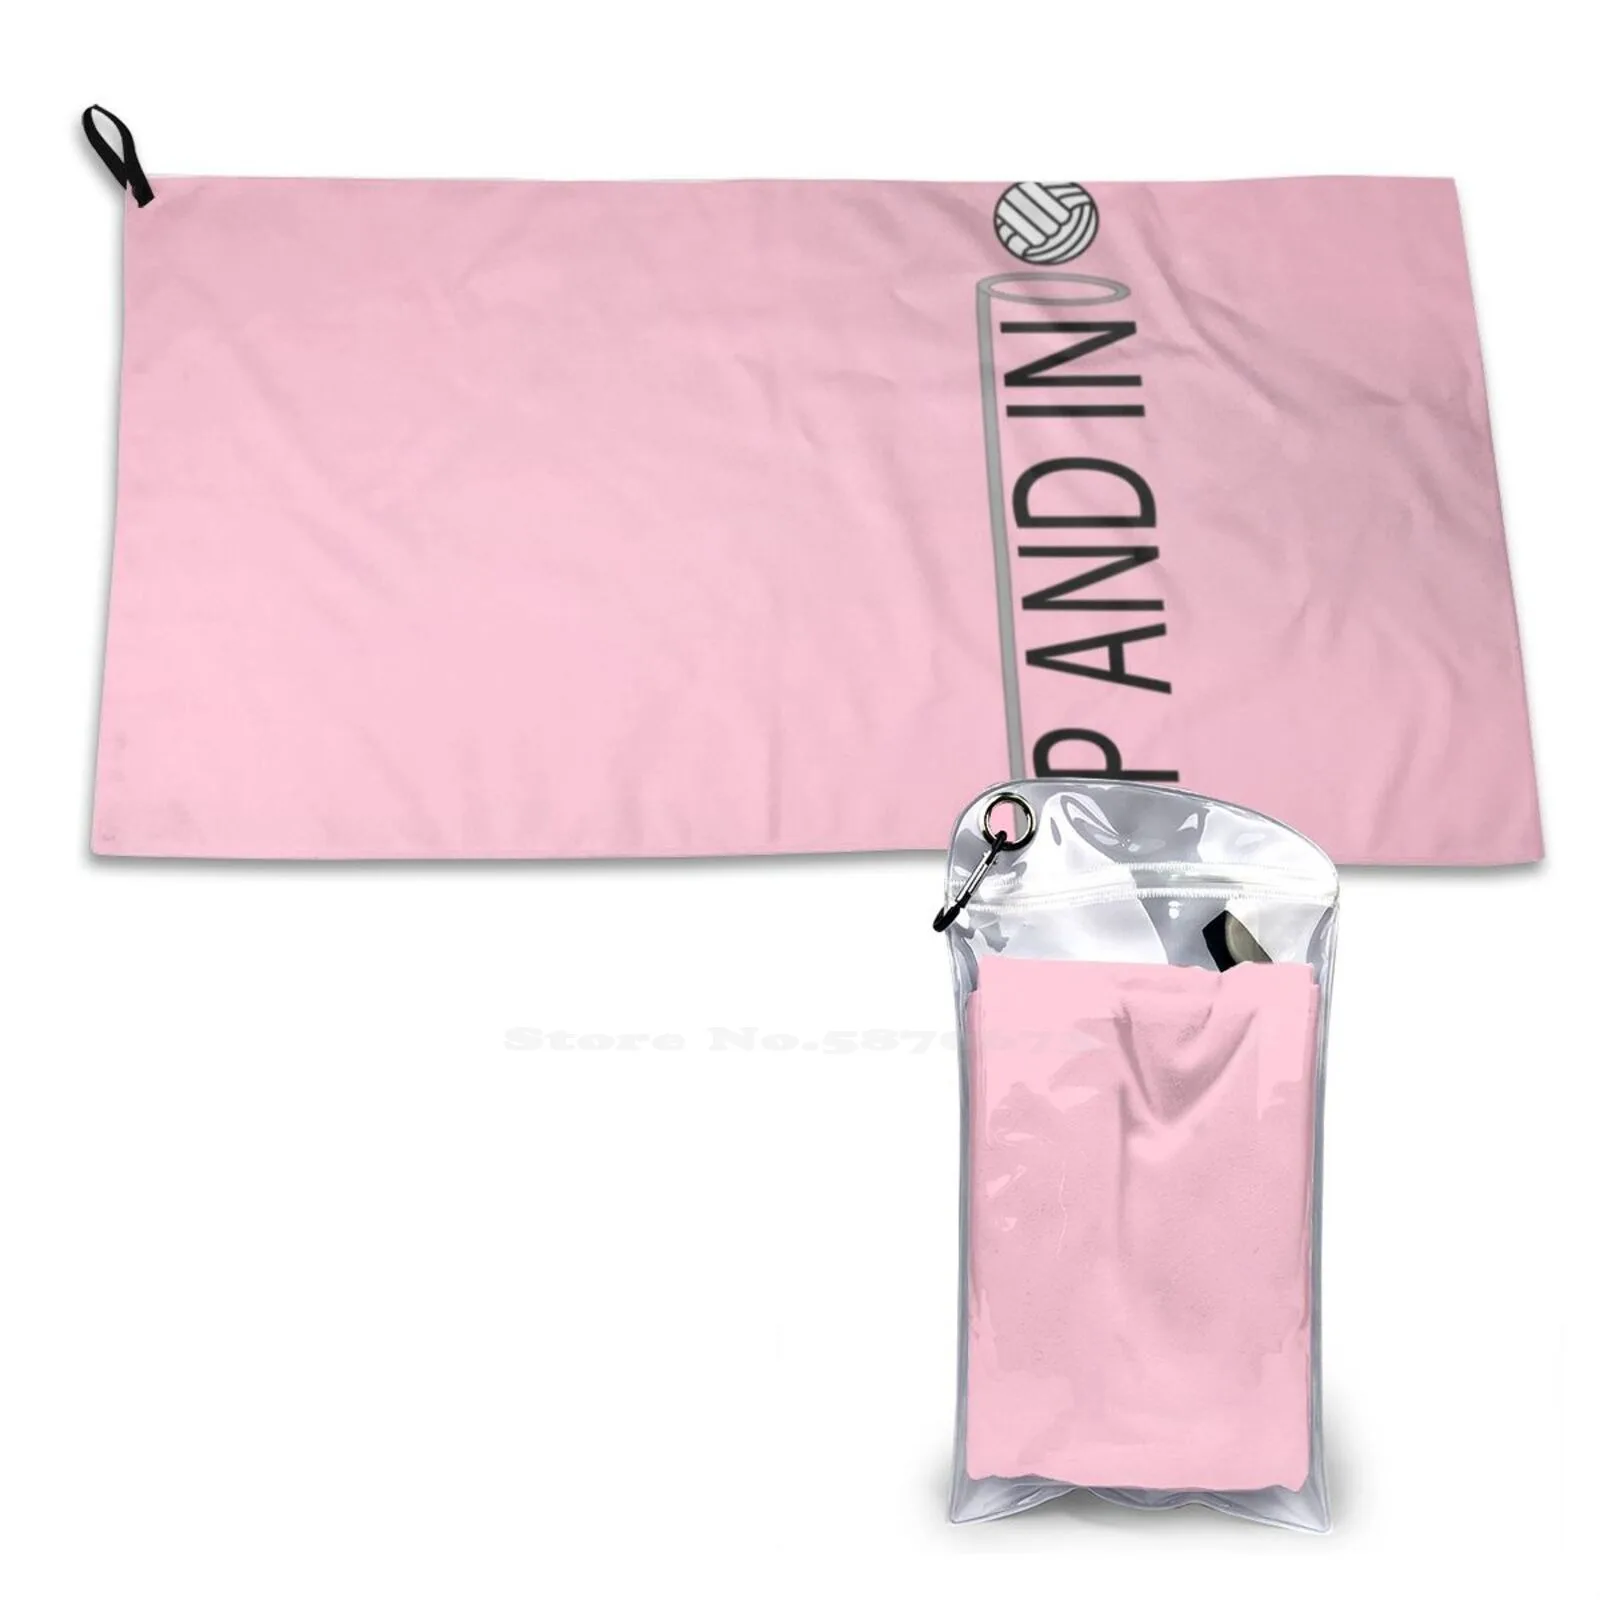 

Up & In розовое персонализированное мягкое полотенце для душа, быстросохнущее полотенце, сетки вверх и в нетболе, телефон Netball, бренды Netball Artist Netball